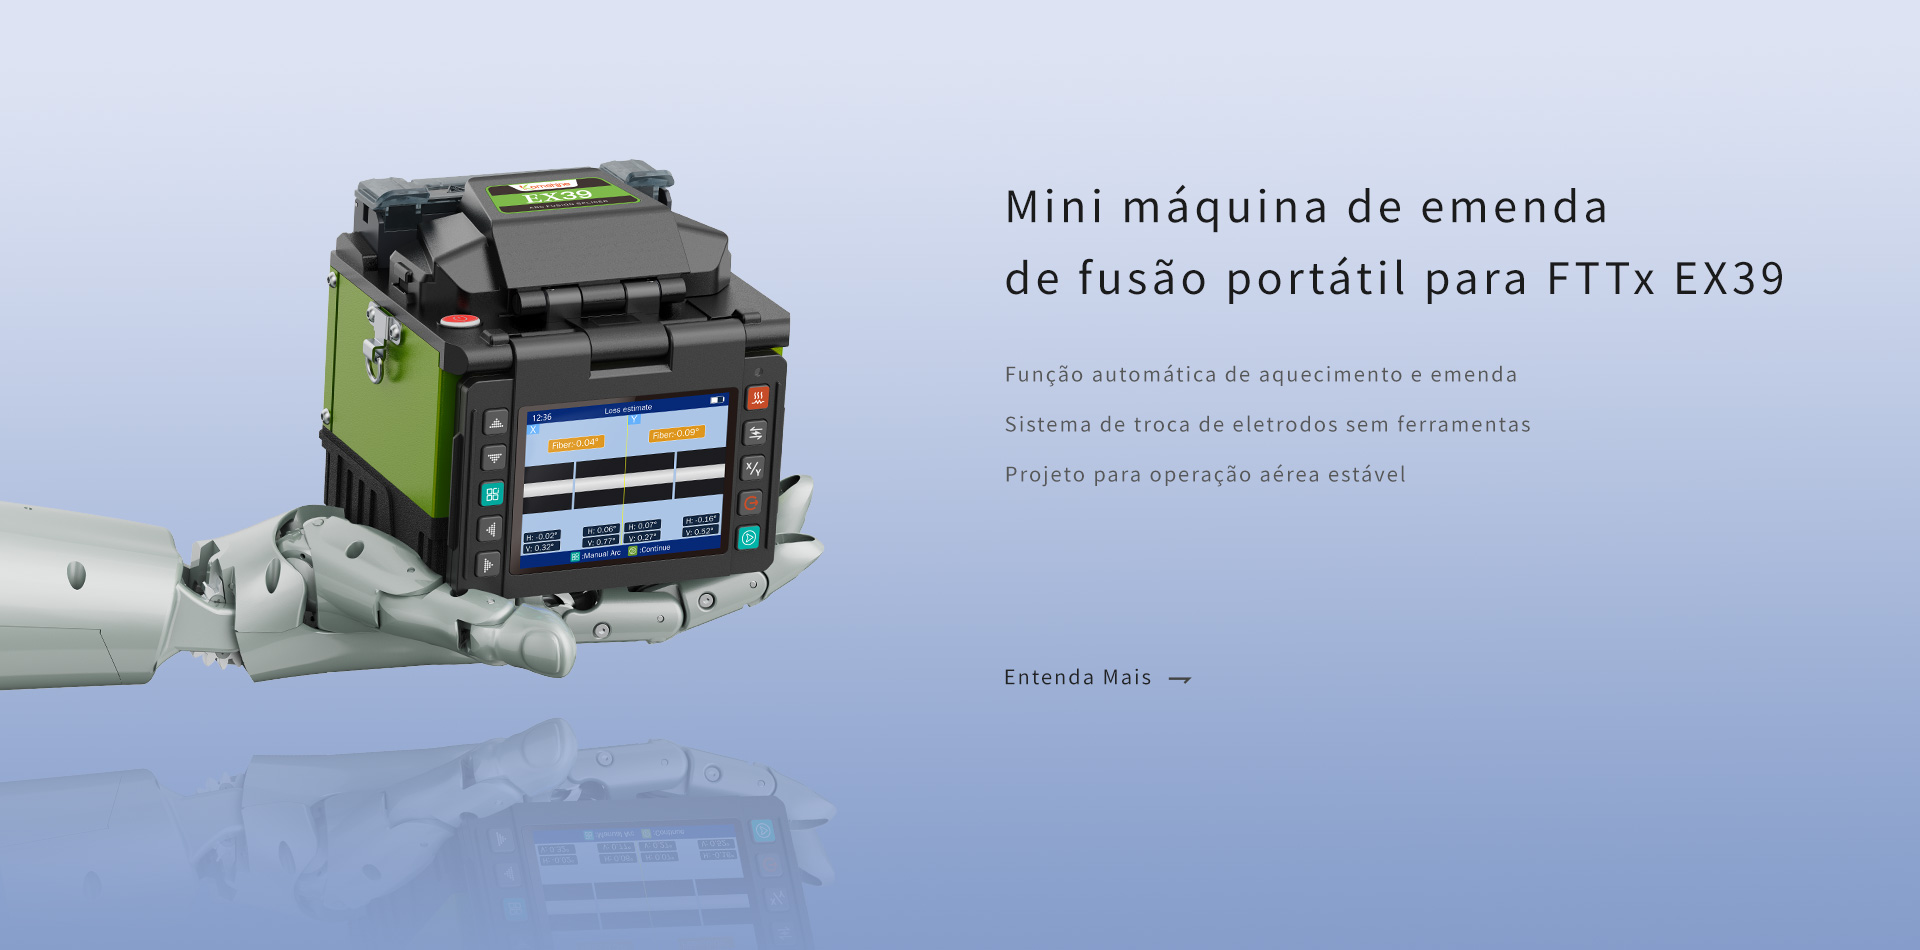 Mini máquina de emenda de fusão portátil para FTTx EX39,máquina de fibra óptica,fusao de fibra otica